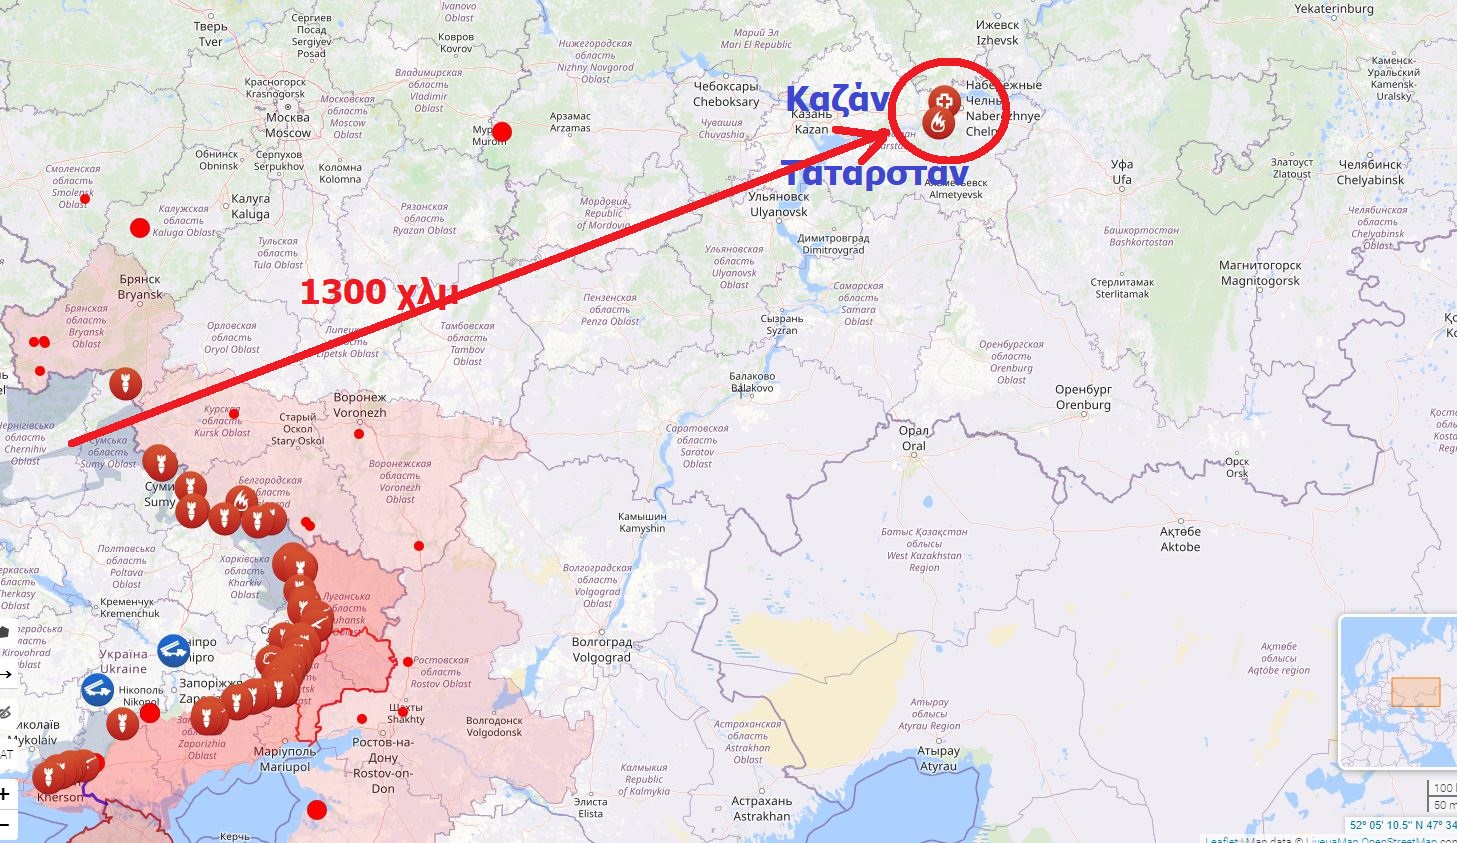 Επίθεση της Ουκρανίας με drones σε μεγάλο βάθος της Ρωσίας – Τραυματίες από την επίθεση εναντίον εργοστασίων στο Ταταρστάν